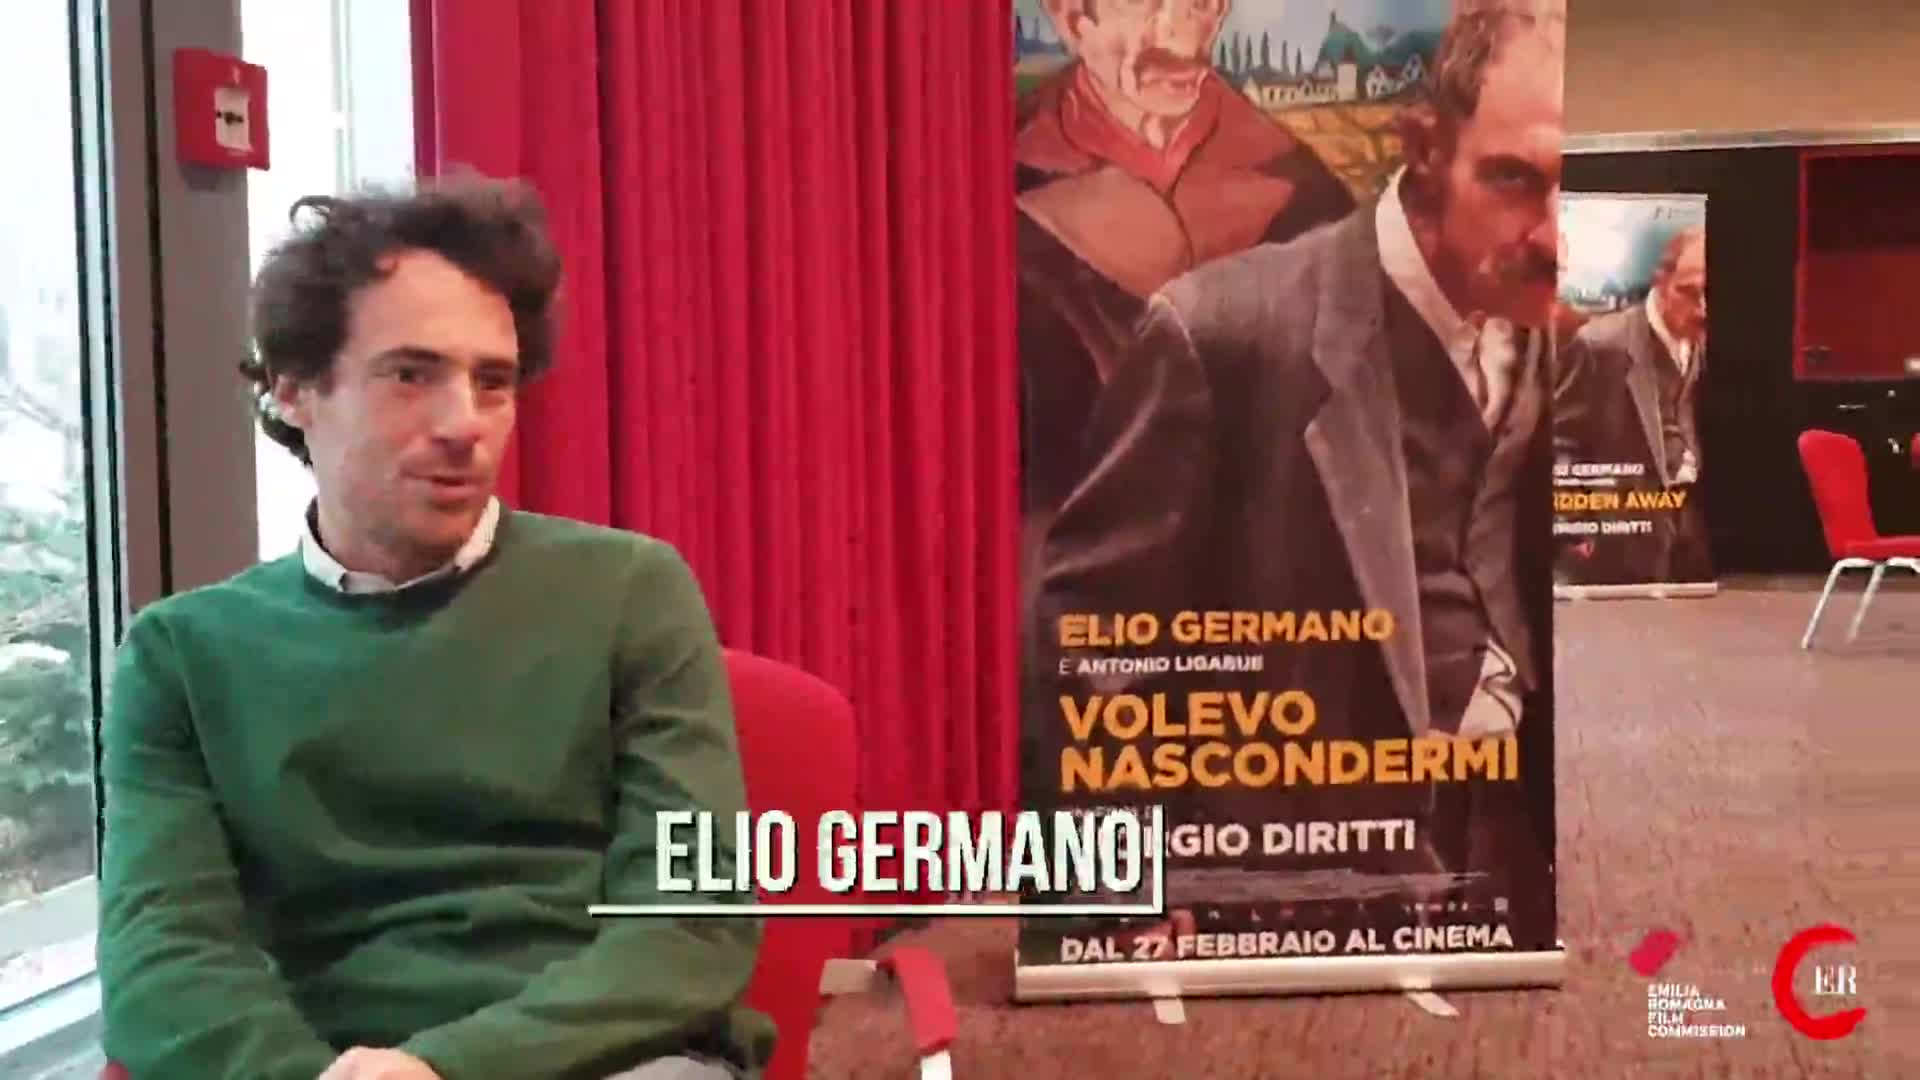 Elio Germano: il mio Ligabue, libero nella diversità - immagine di copertina